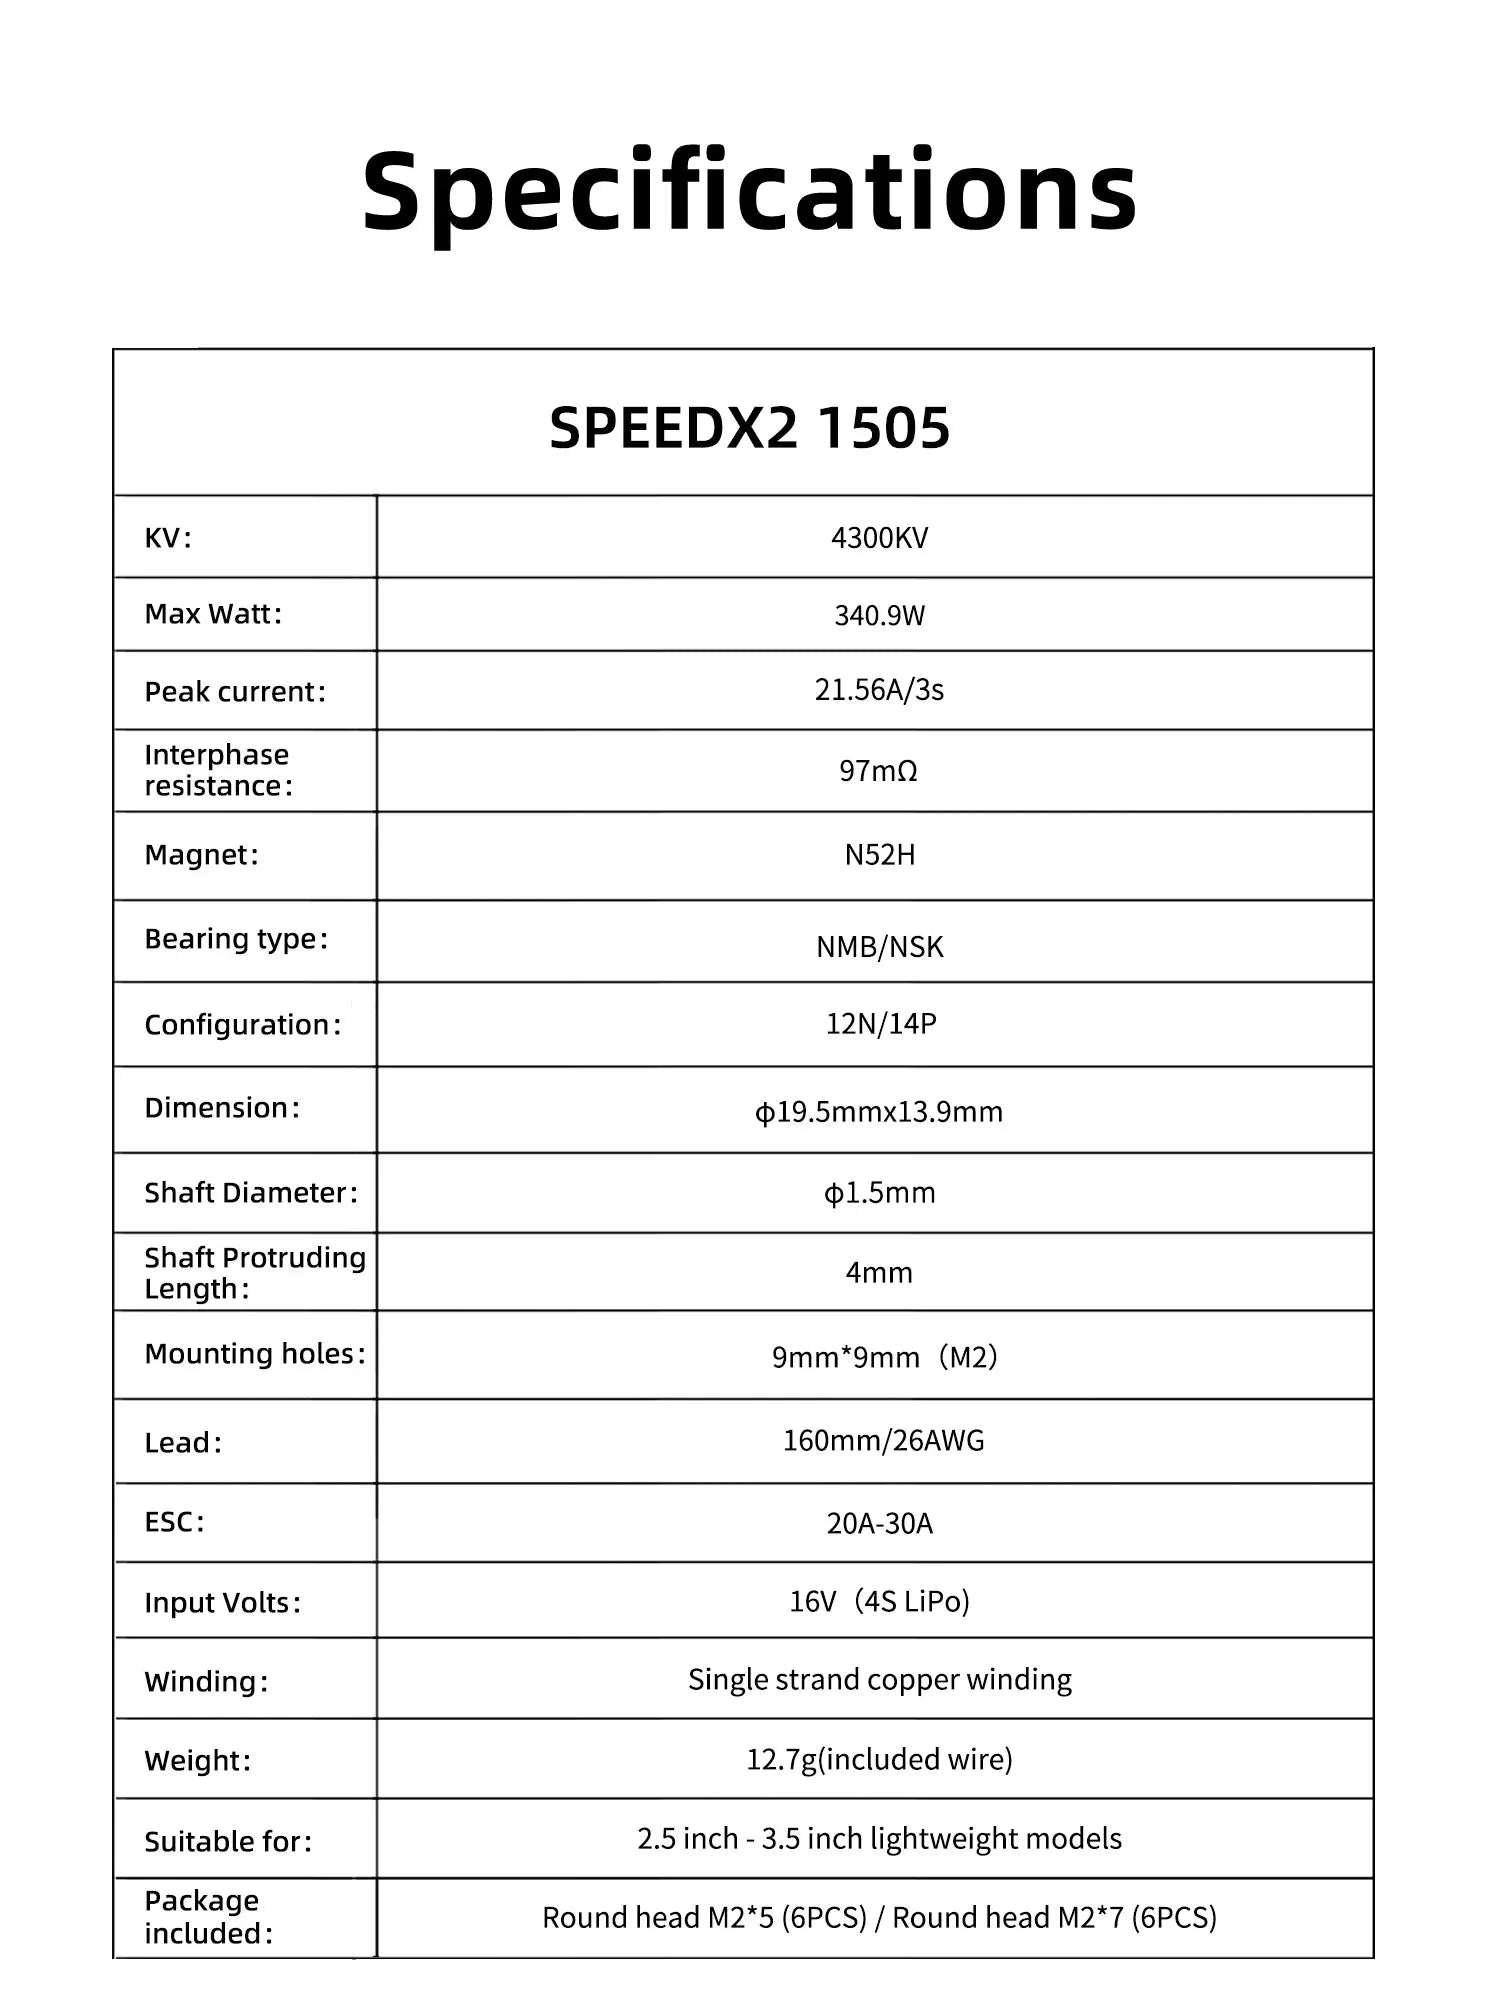 GEPRC SPEEDX2 1505 4300KV Motor, Specifications SPEEDX2 1505 KV: 4300KV Max Watt: